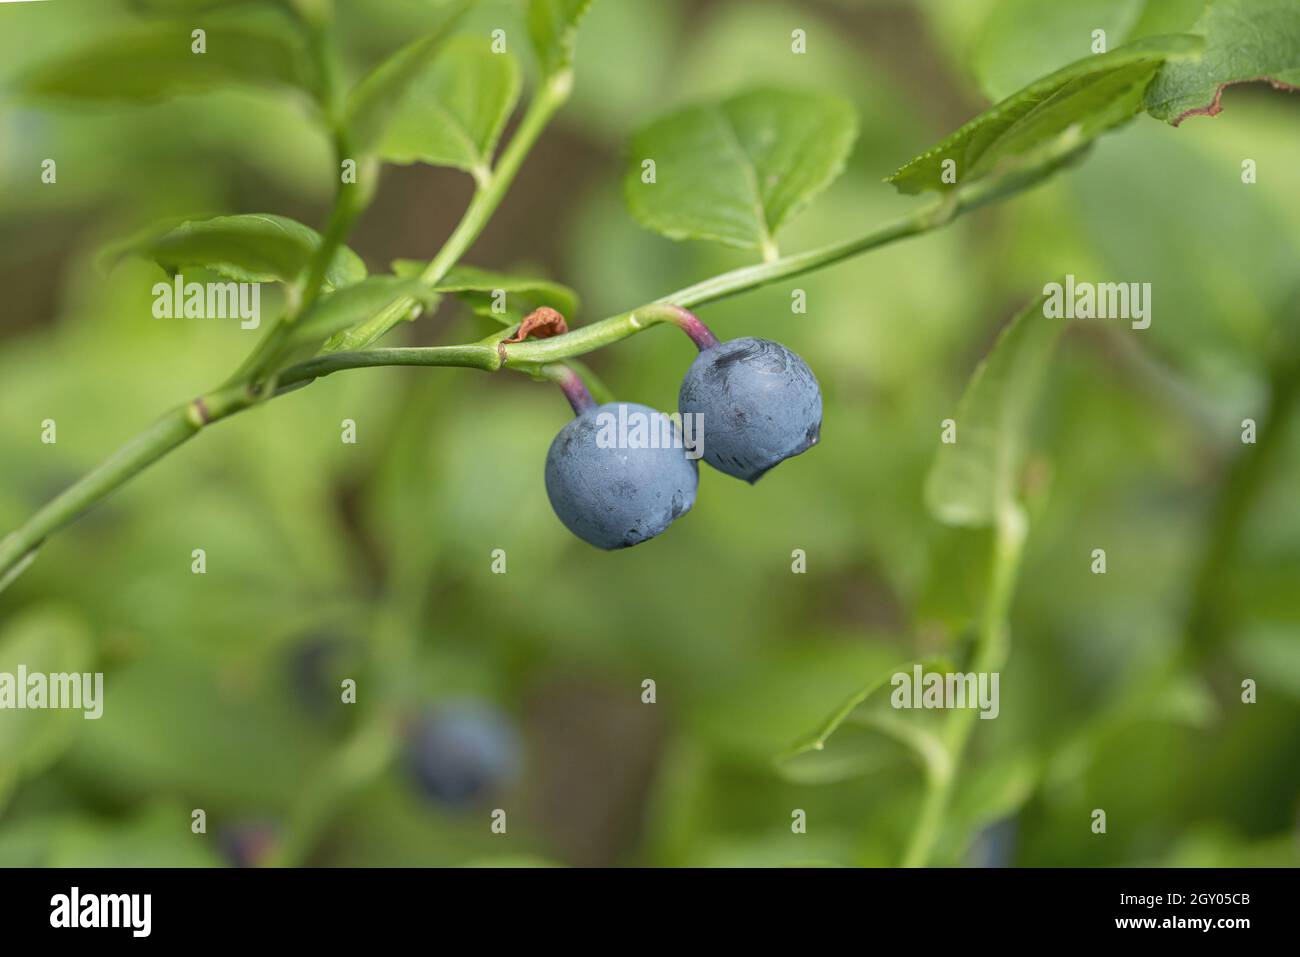 Arándano enano, arándano, arándano, bajo billberry (Vaccinium myrtillus), arándanos en una rama, Alemania Foto de stock